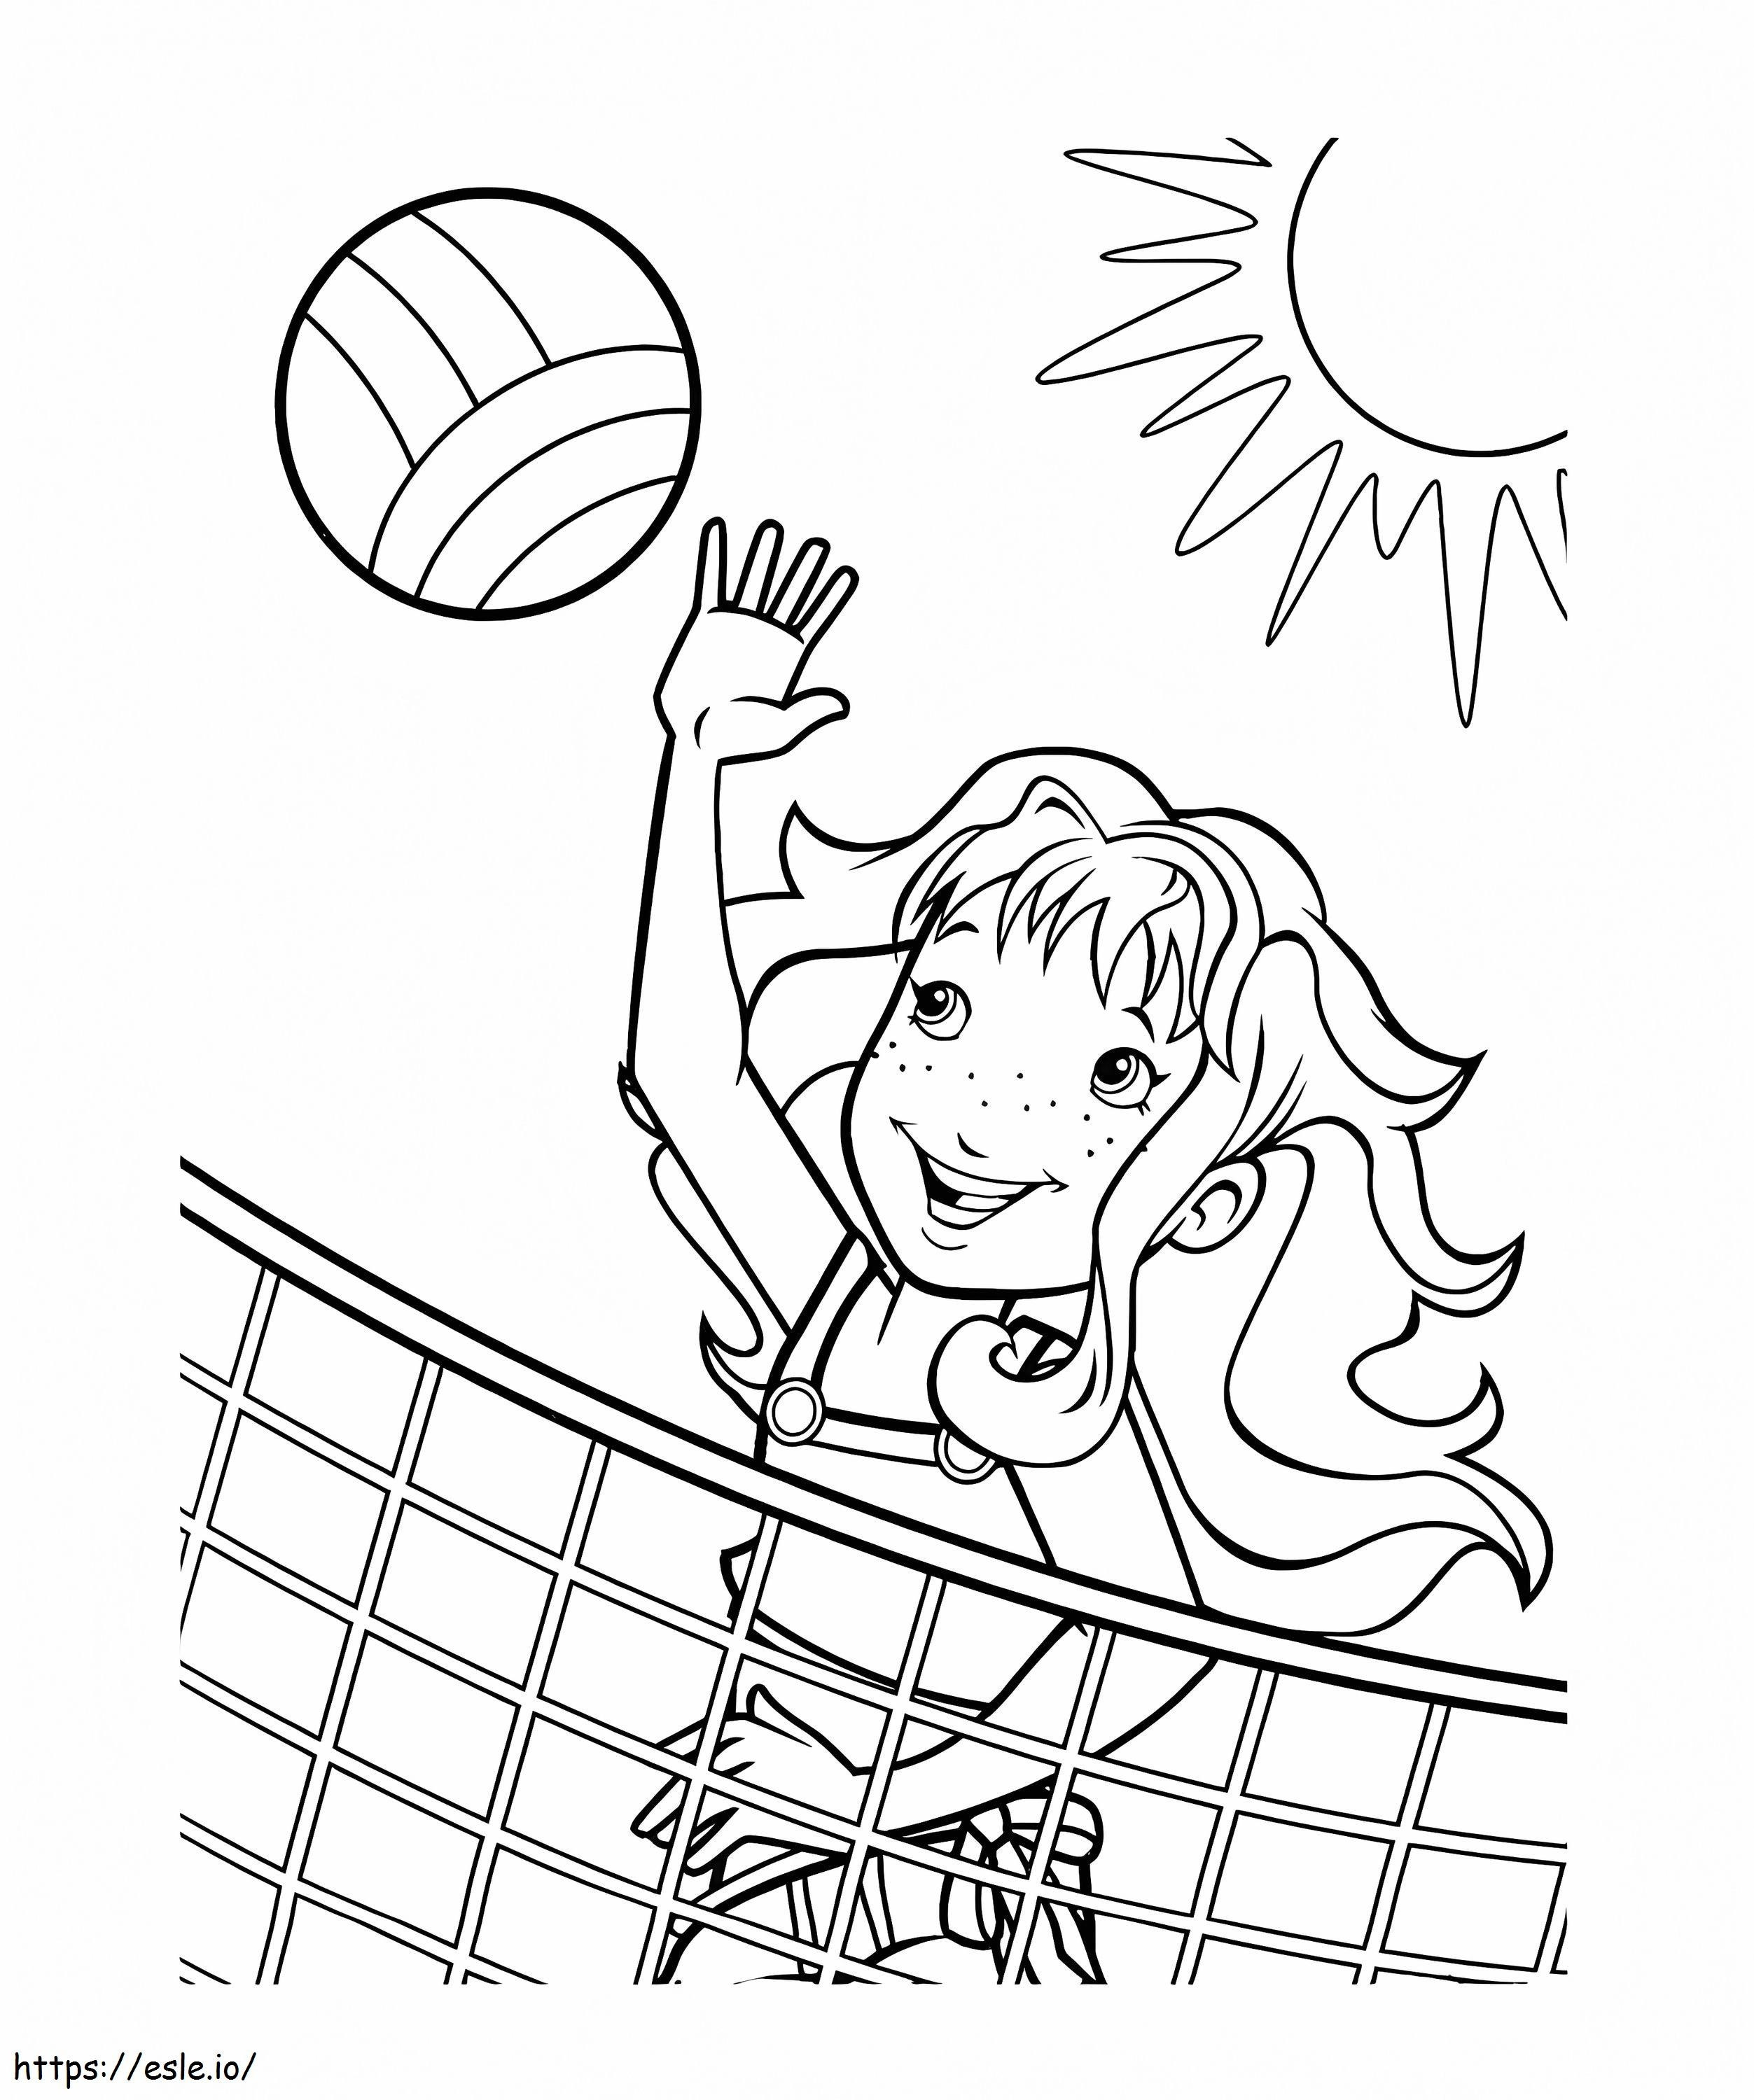 Dibujos para colorear de niña jugando voleibol para colorear